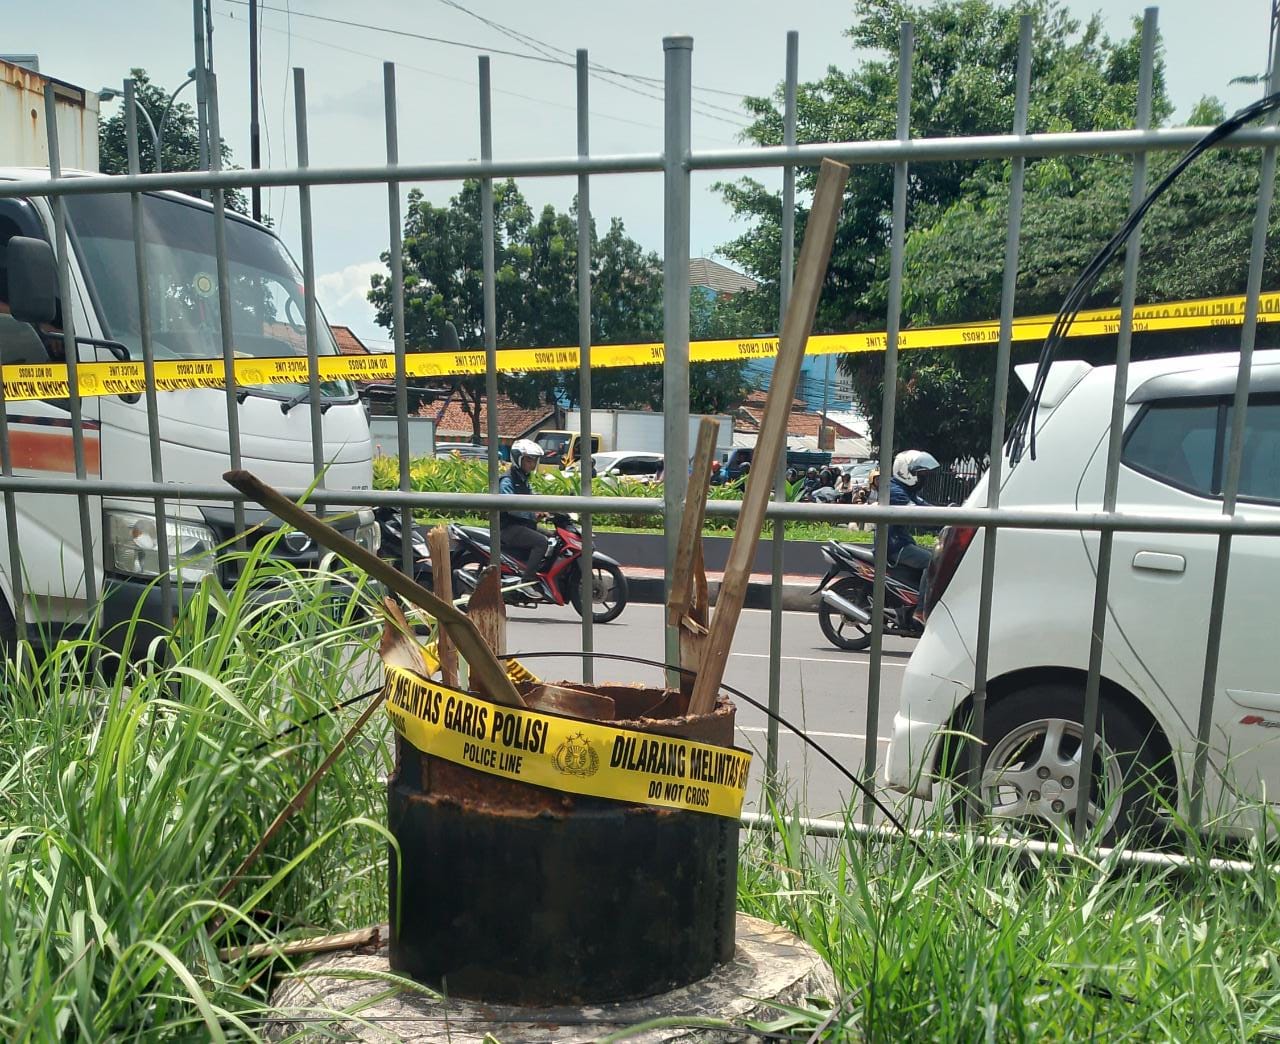 TAK BERIZIN: Kondisi papan reklame pasca roboh, yang berlokasi di Jalan Soekarno Hatta, Kota Bandung. Ternyata reklame tersebut ilegal. (SADAM HUSEN SOLEH RAMDHANI/JABAR EKSPRES)